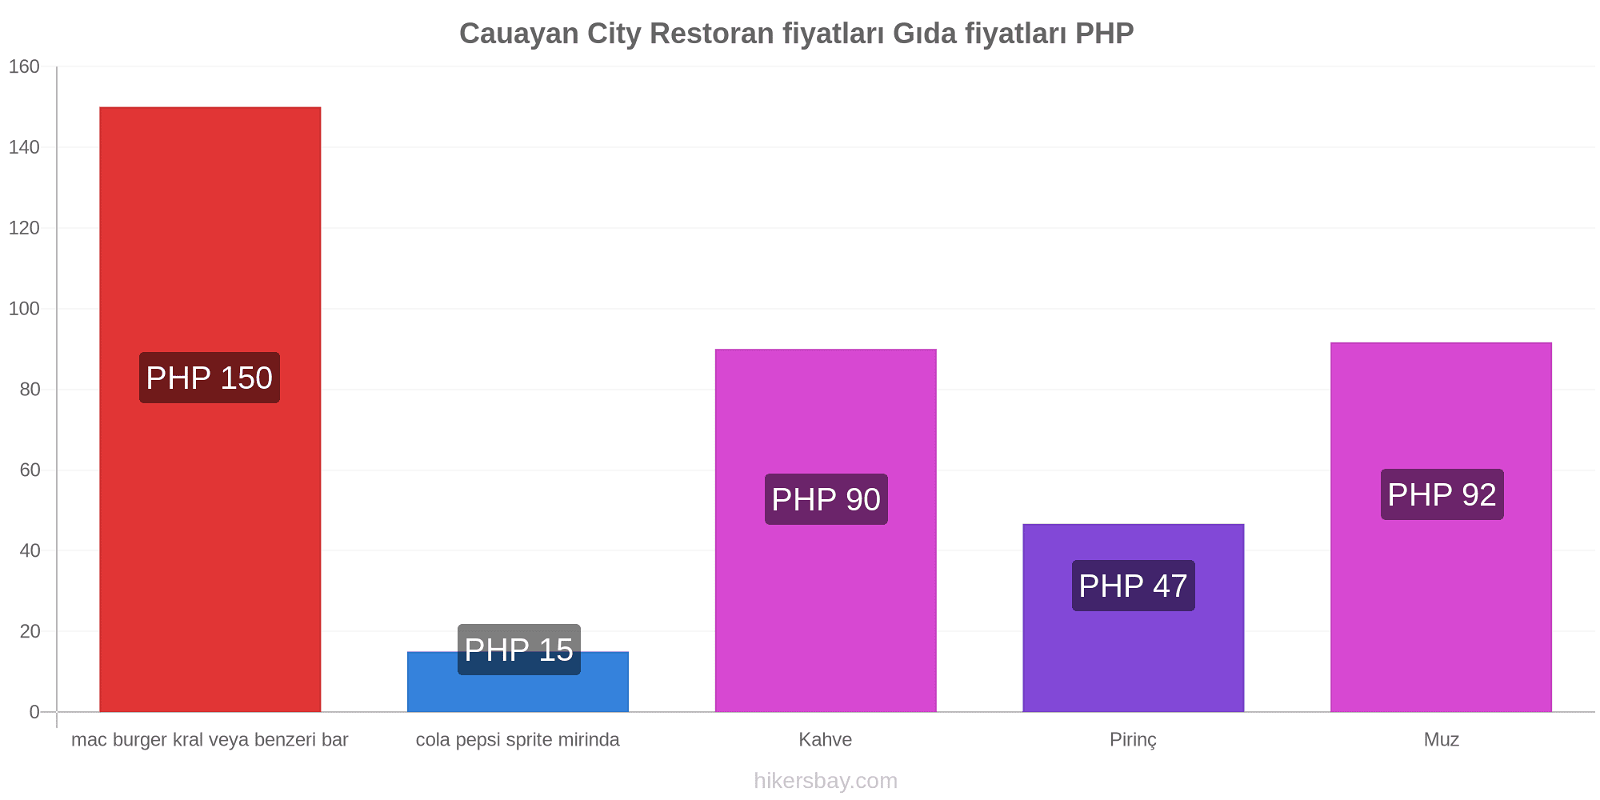 Cauayan City fiyat değişiklikleri hikersbay.com